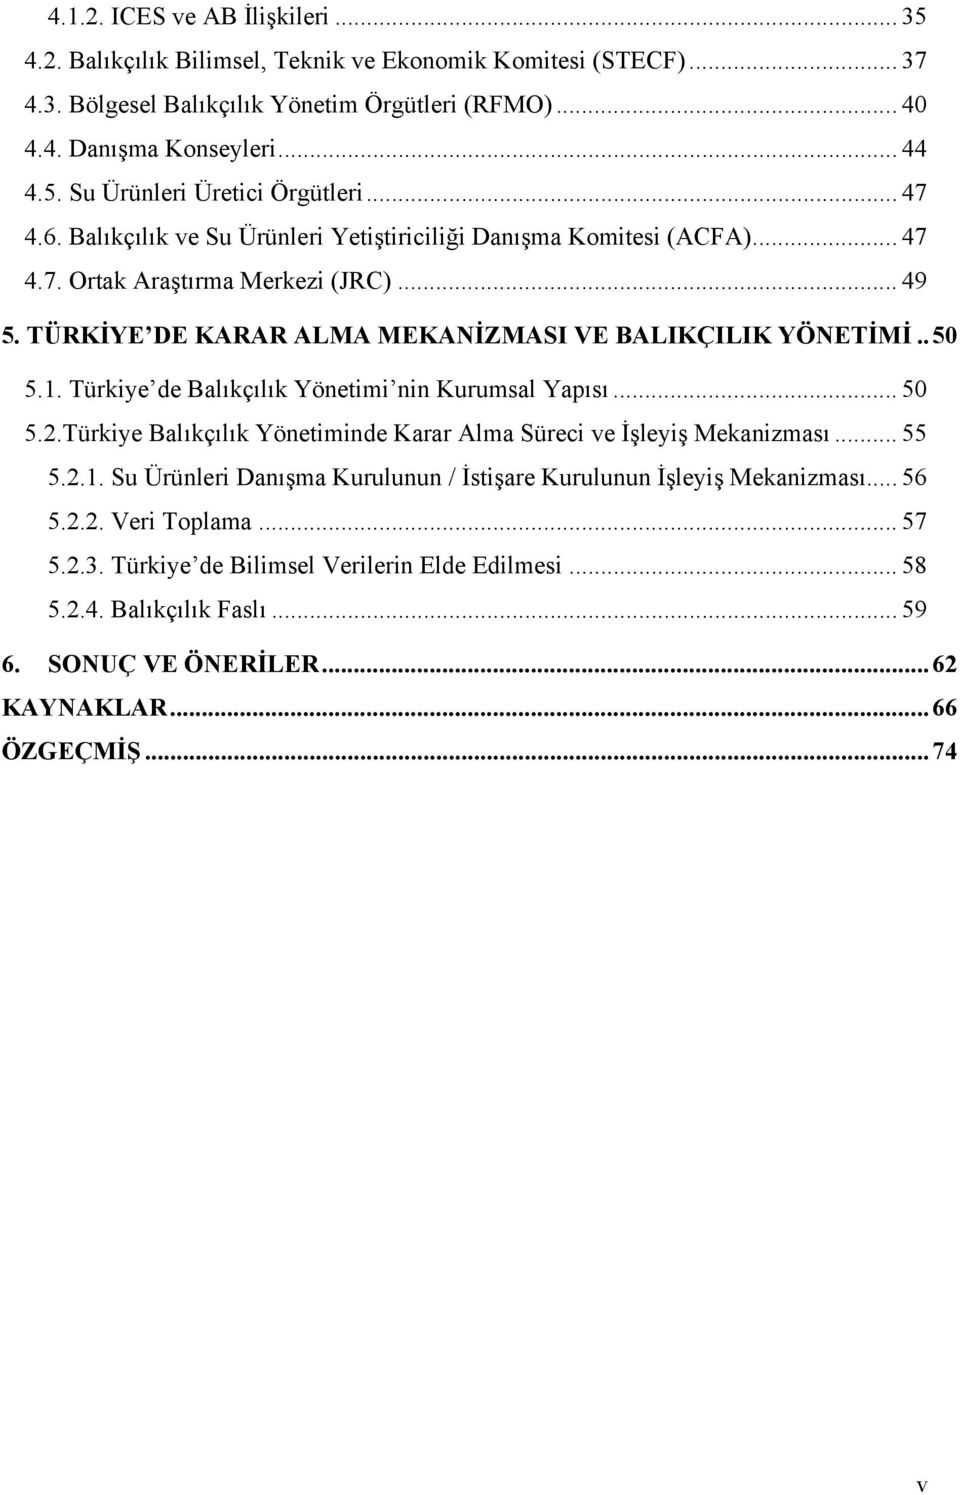 Türkiye de Balıkçılık Yönetimi nin Kurumsal Yapısı... 50 5.2.Türkiye Balıkçılık Yönetiminde Karar Alma Süreci ve İşleyiş Mekanizması... 55 5.2.1.